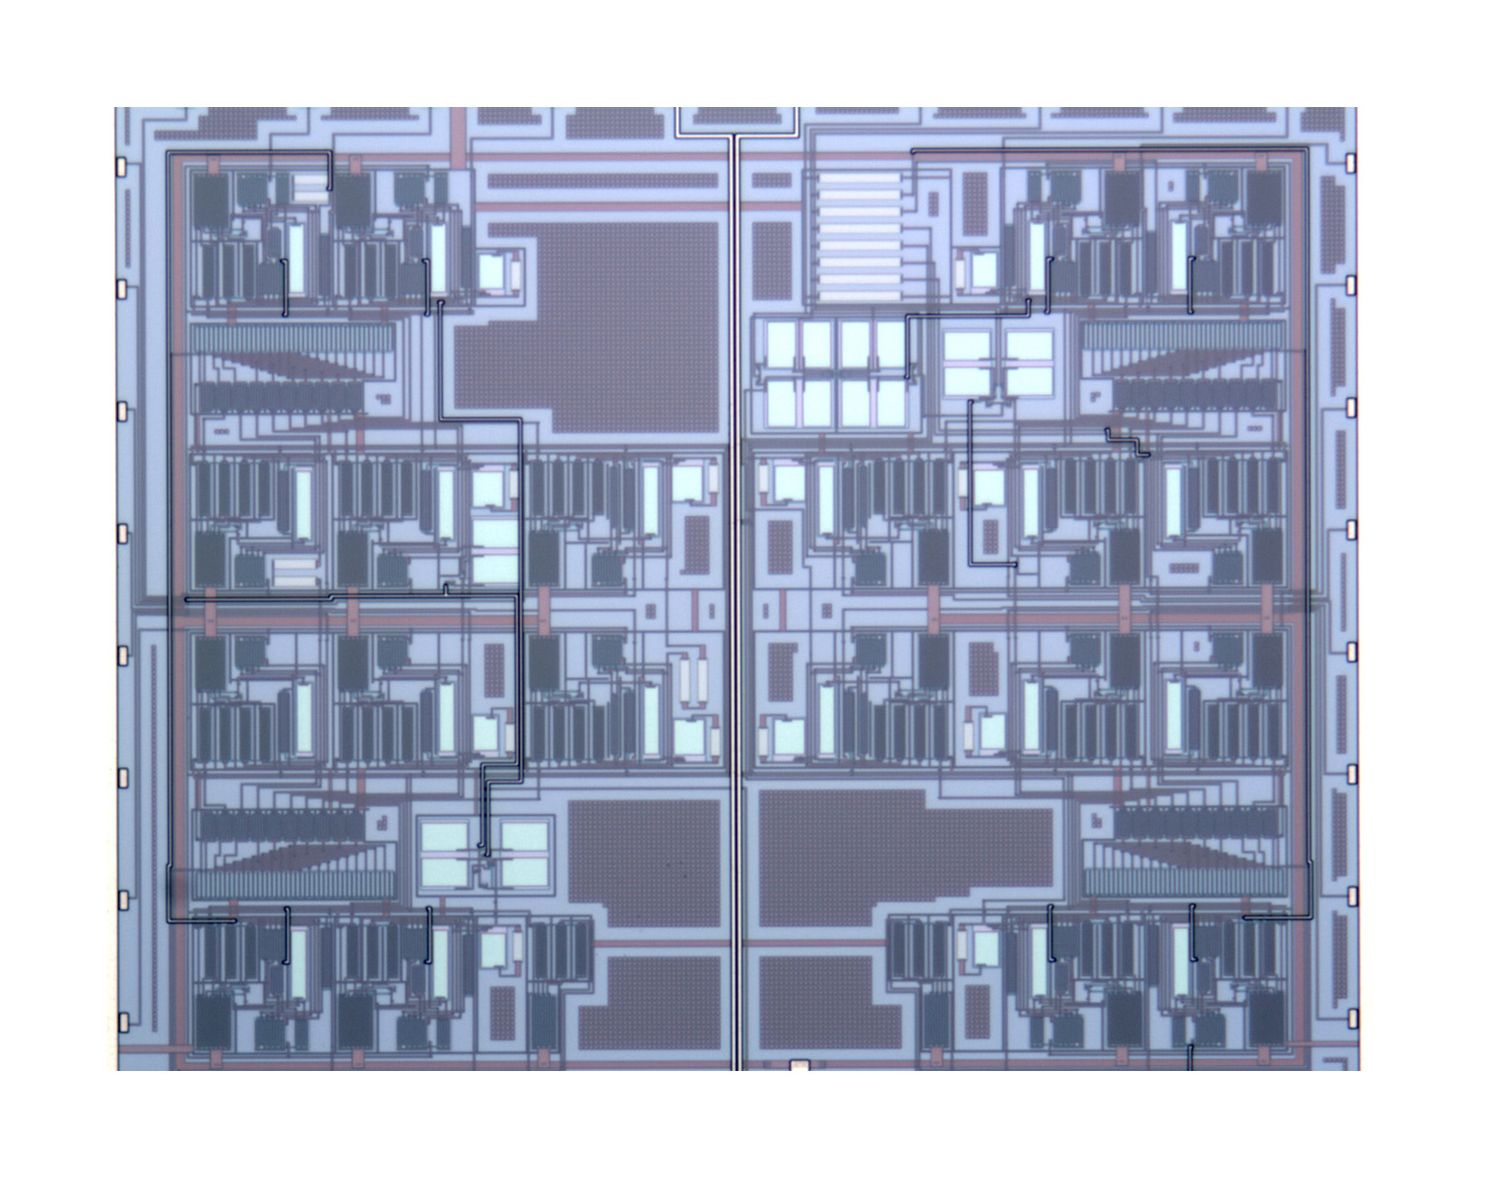 Microfotografía del chip, que tiene un tamaño aproximado de 1 milímetro cuadrado. Fuente: UPNA.